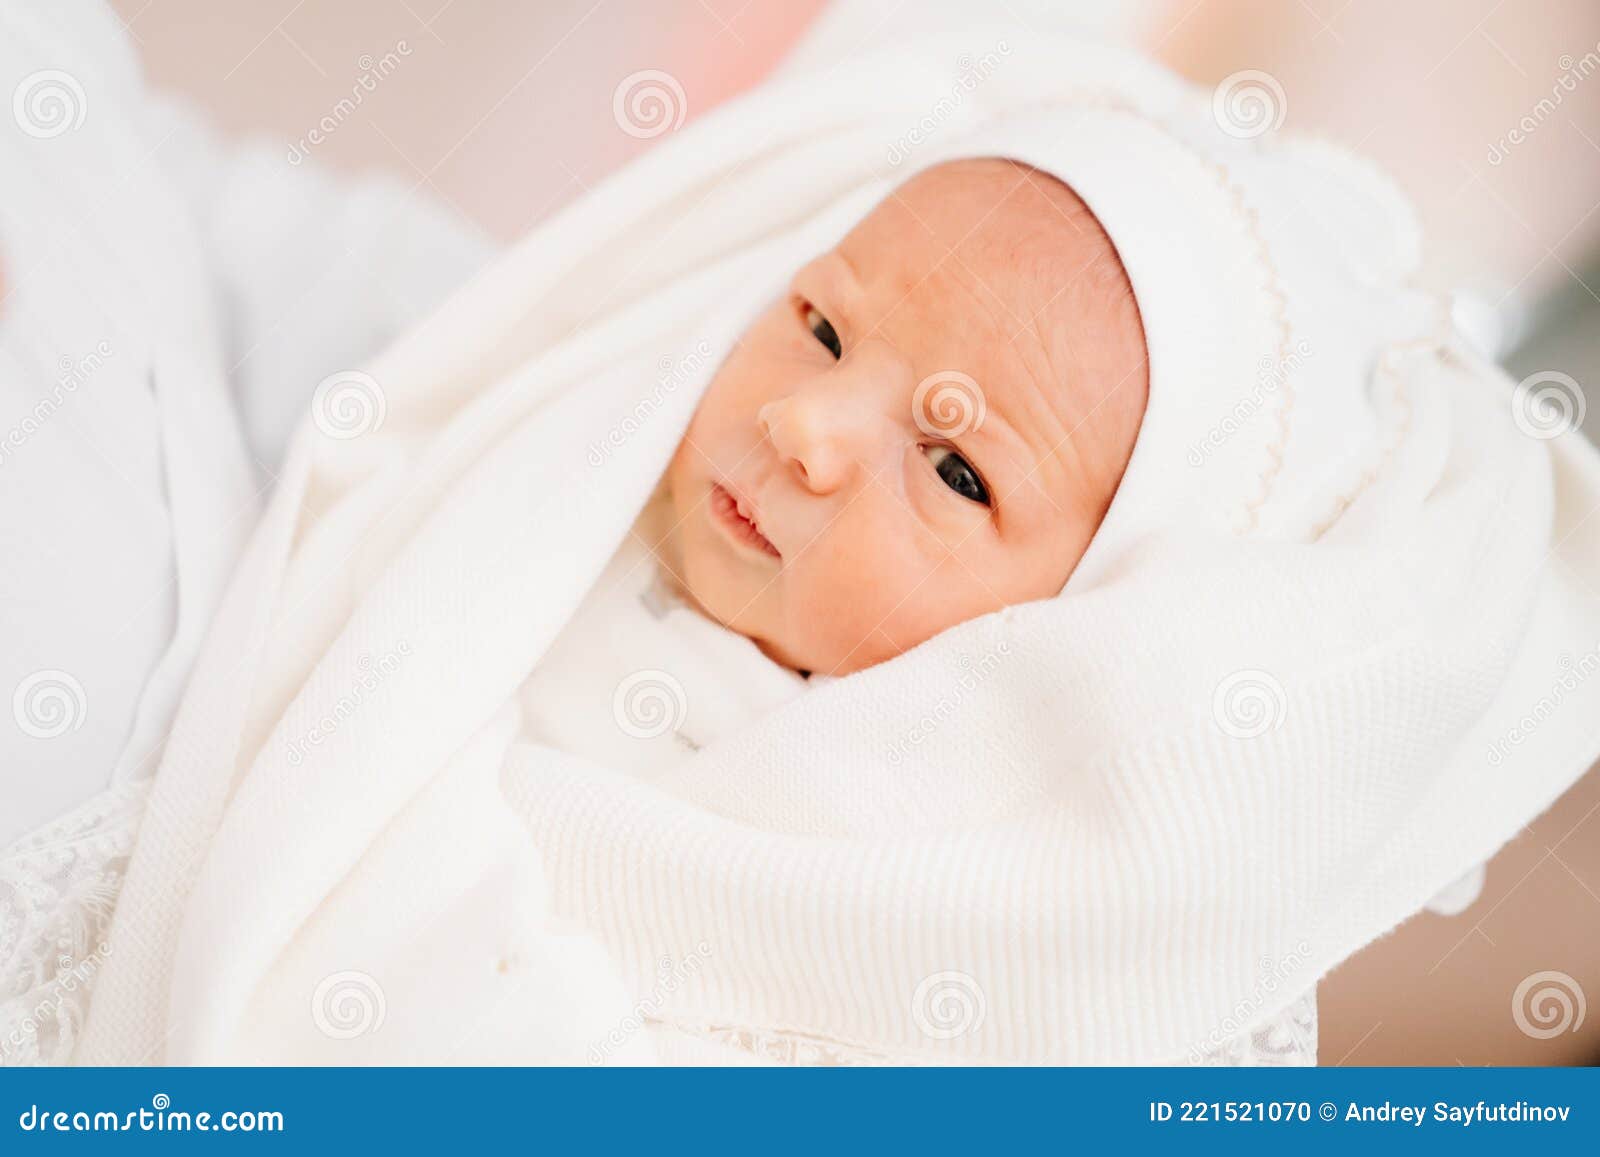 Recién Nacido Con Ropa Blanca En Manos De Sus Vestimenta Para El Alta Hospitalaria Foto de - Imagen de muchacha, poco: 221521070